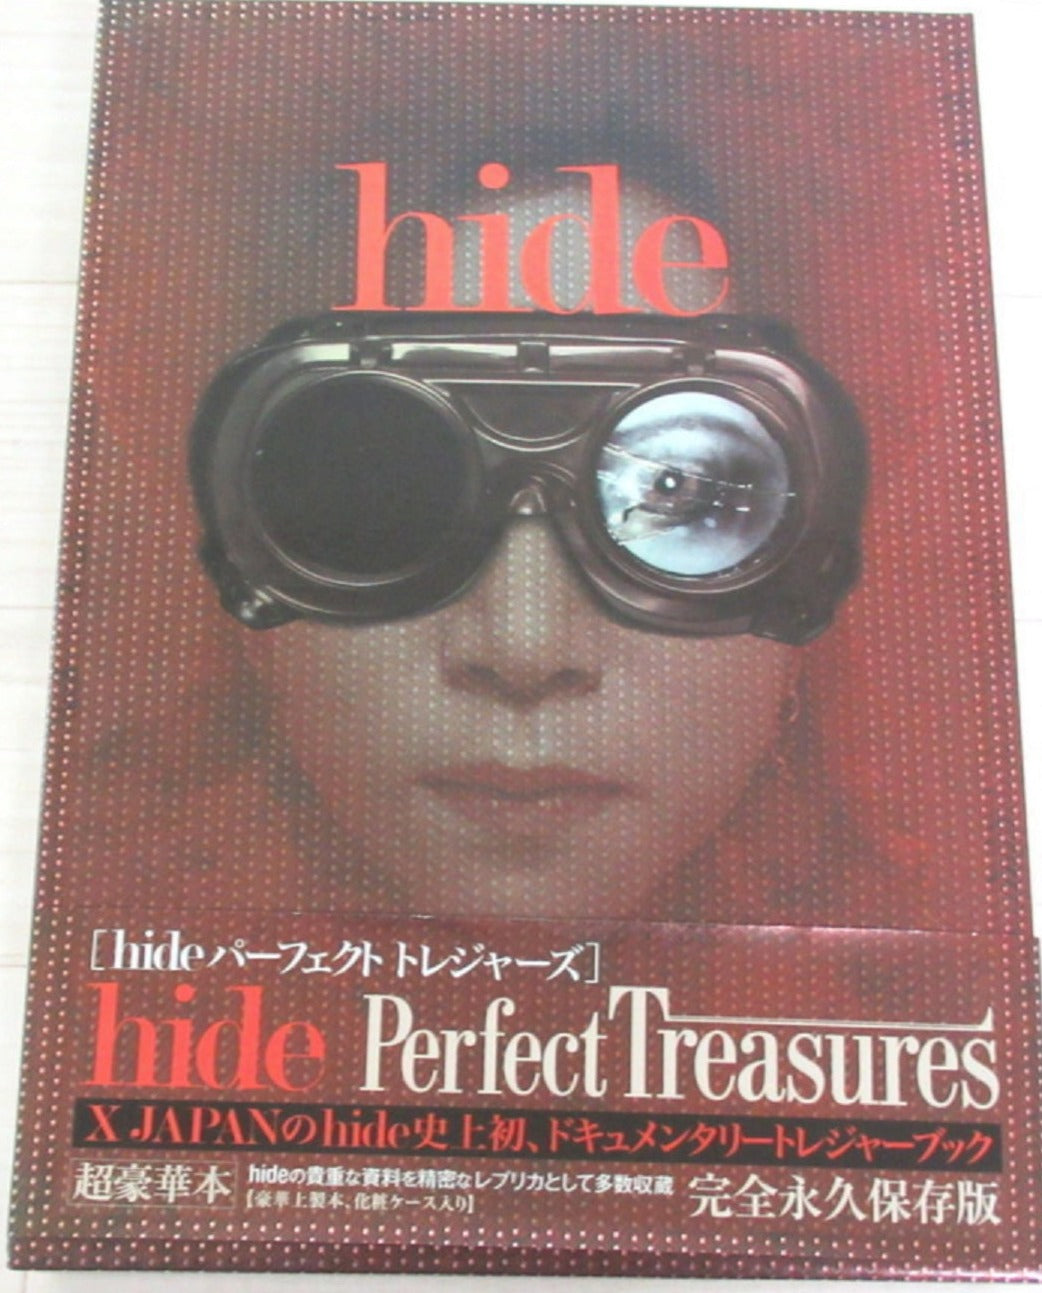 hide / パーフェクト・トレジャーズ-